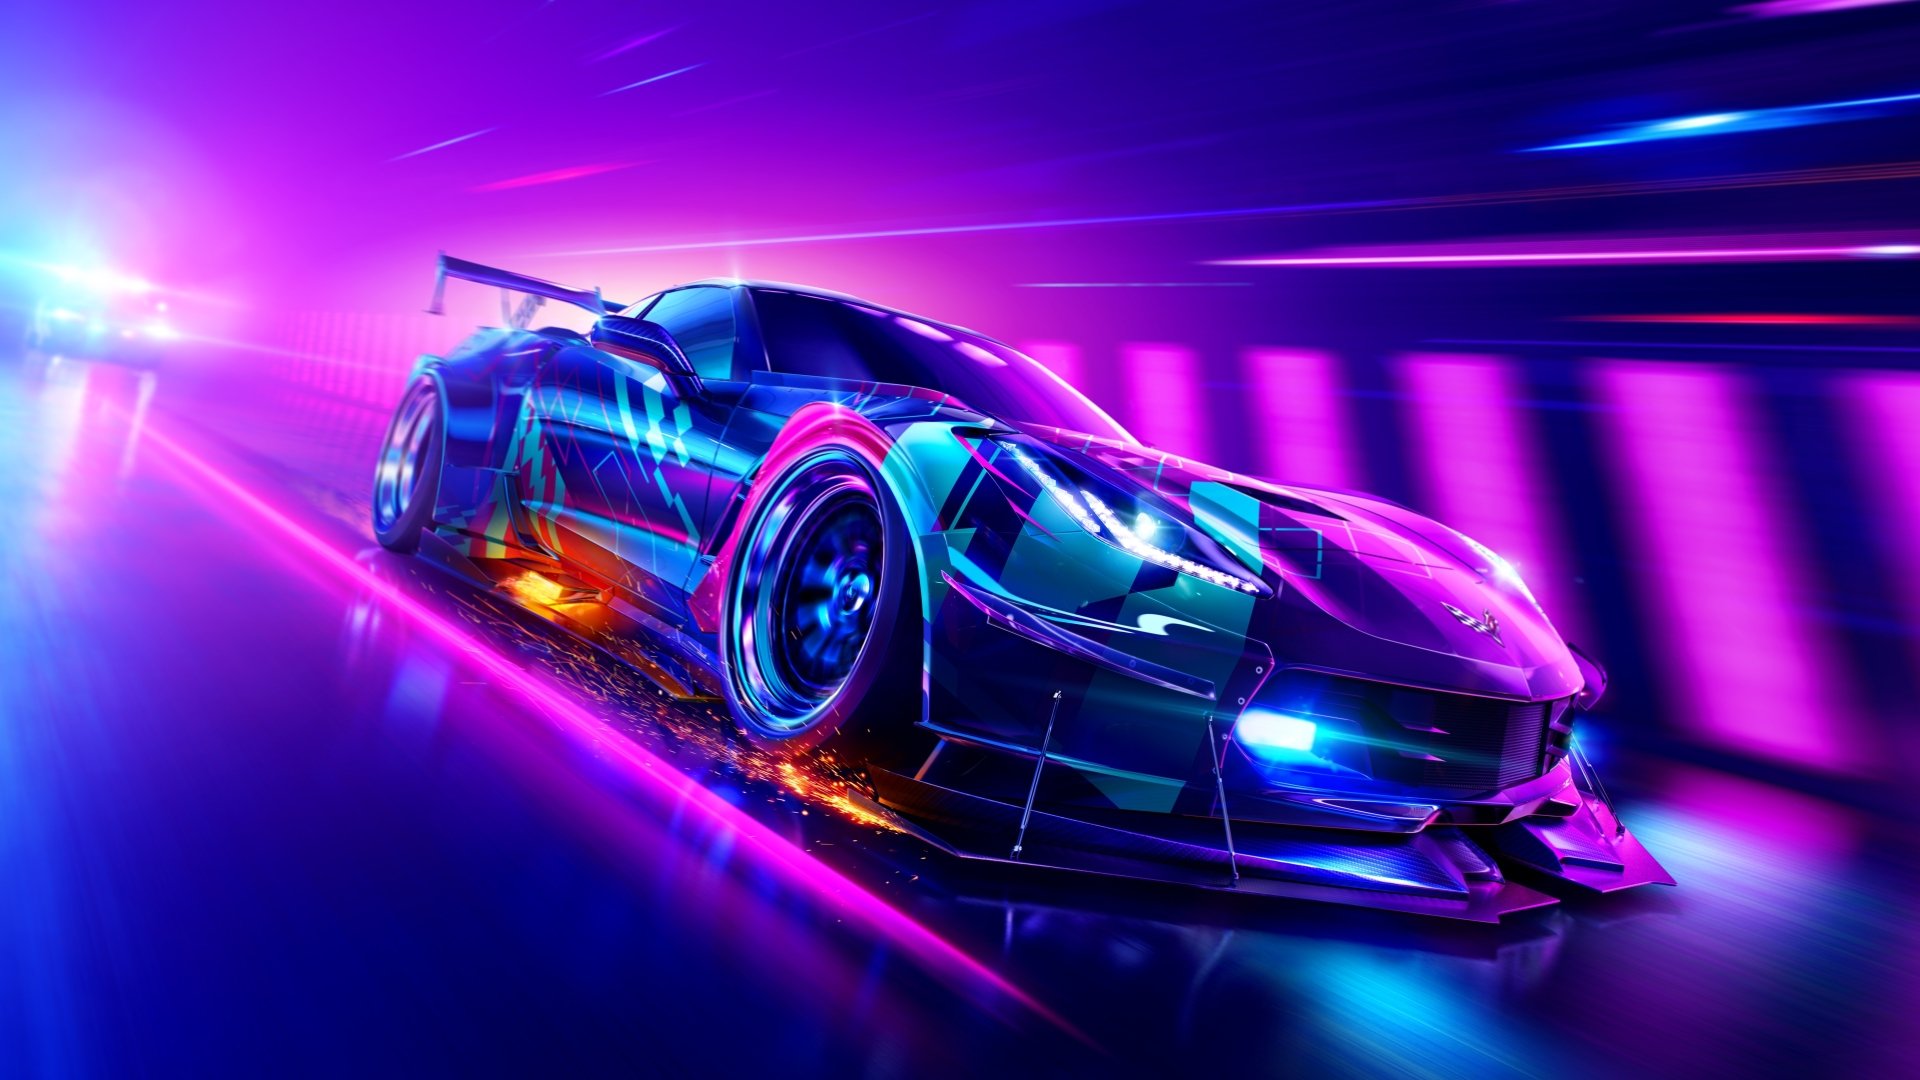 شایعه: نسخه جدید بازی Need For Speed در ماه جولای معرفی خواهد شد